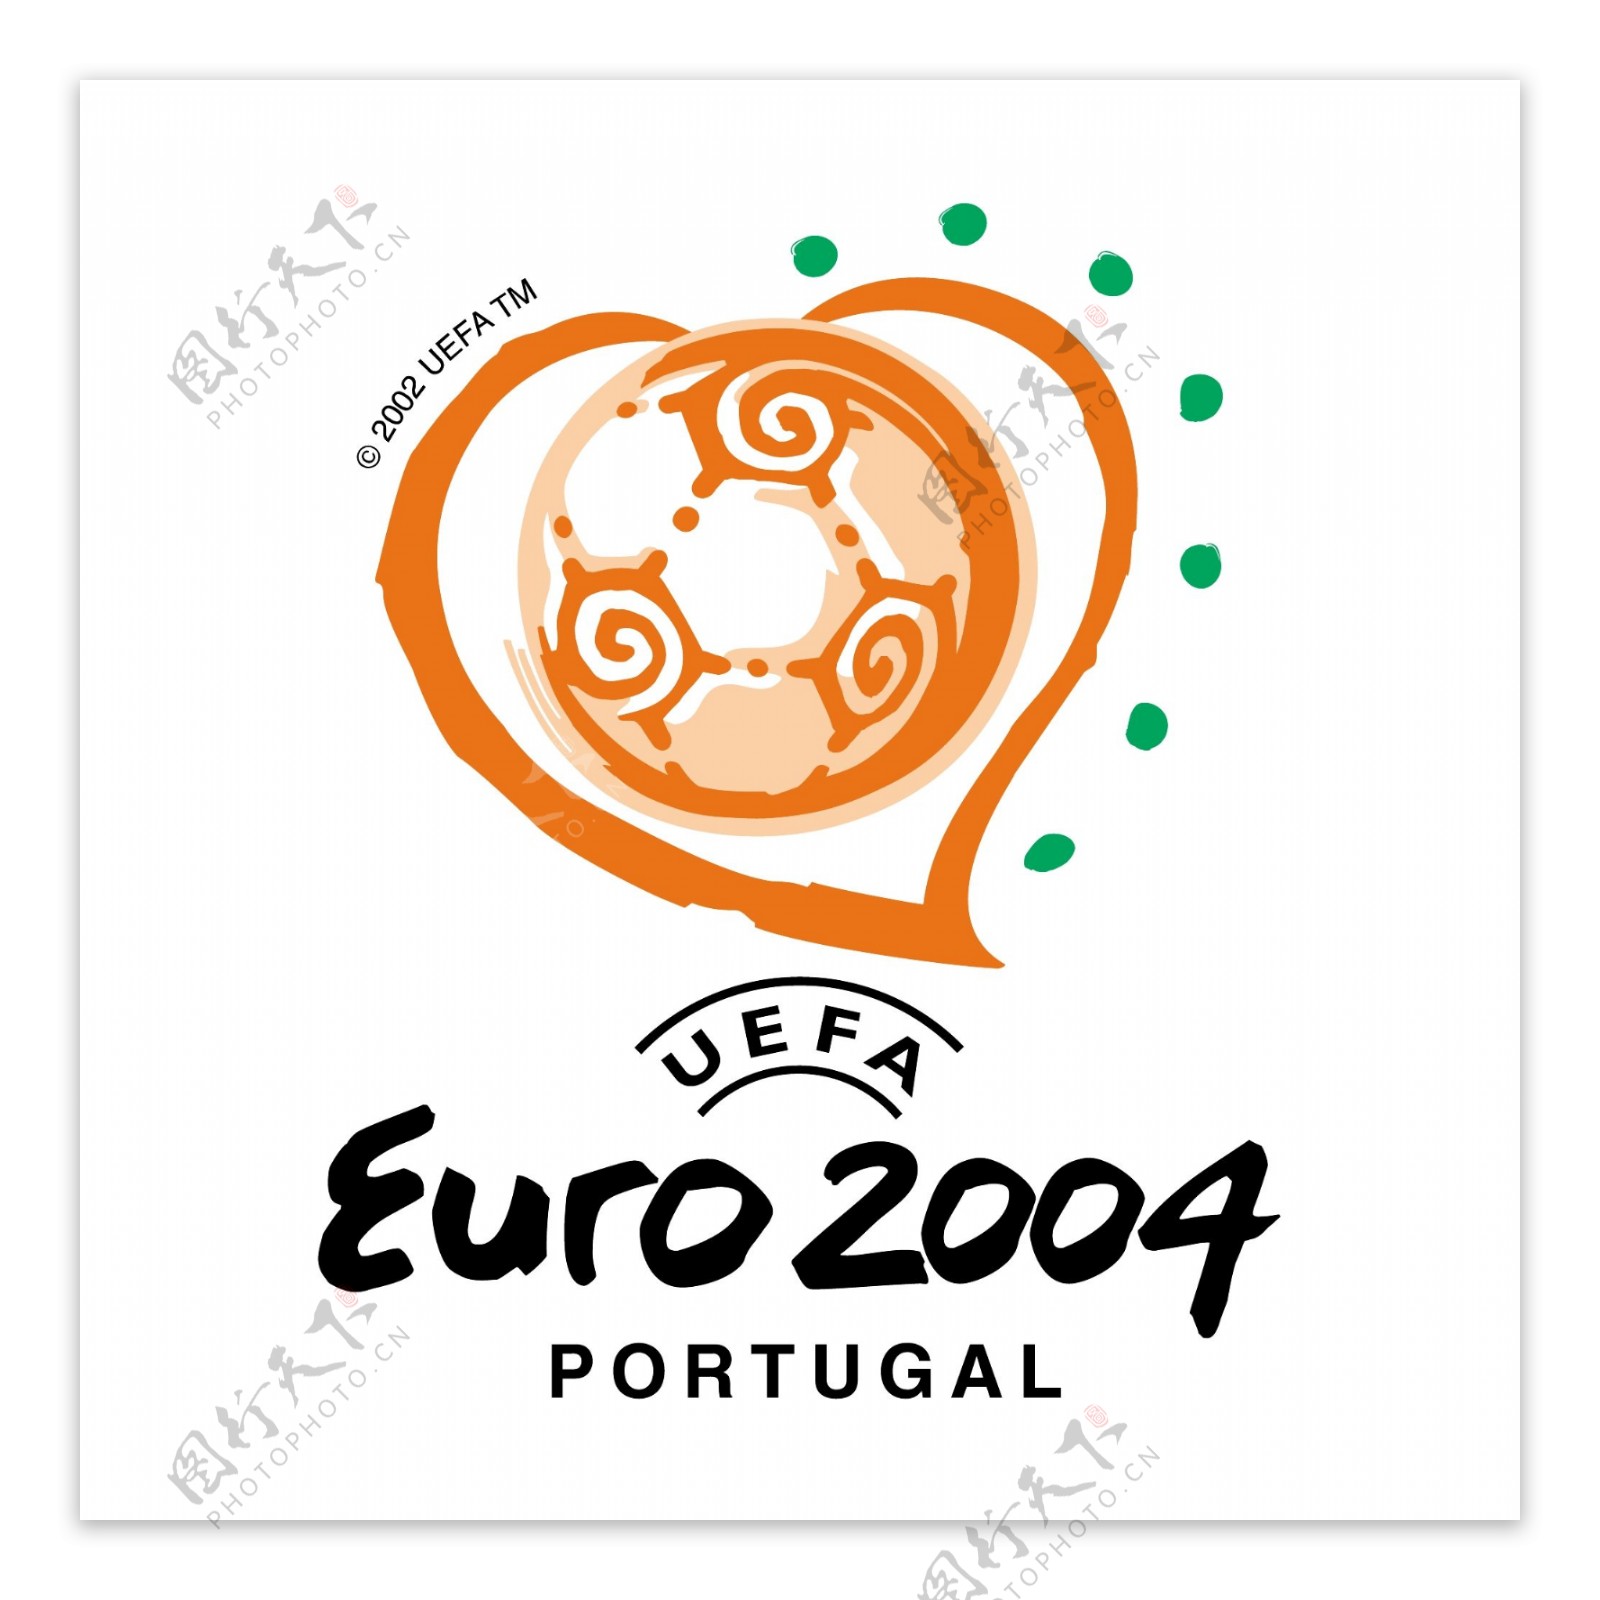 欧洲杯2004葡萄牙35